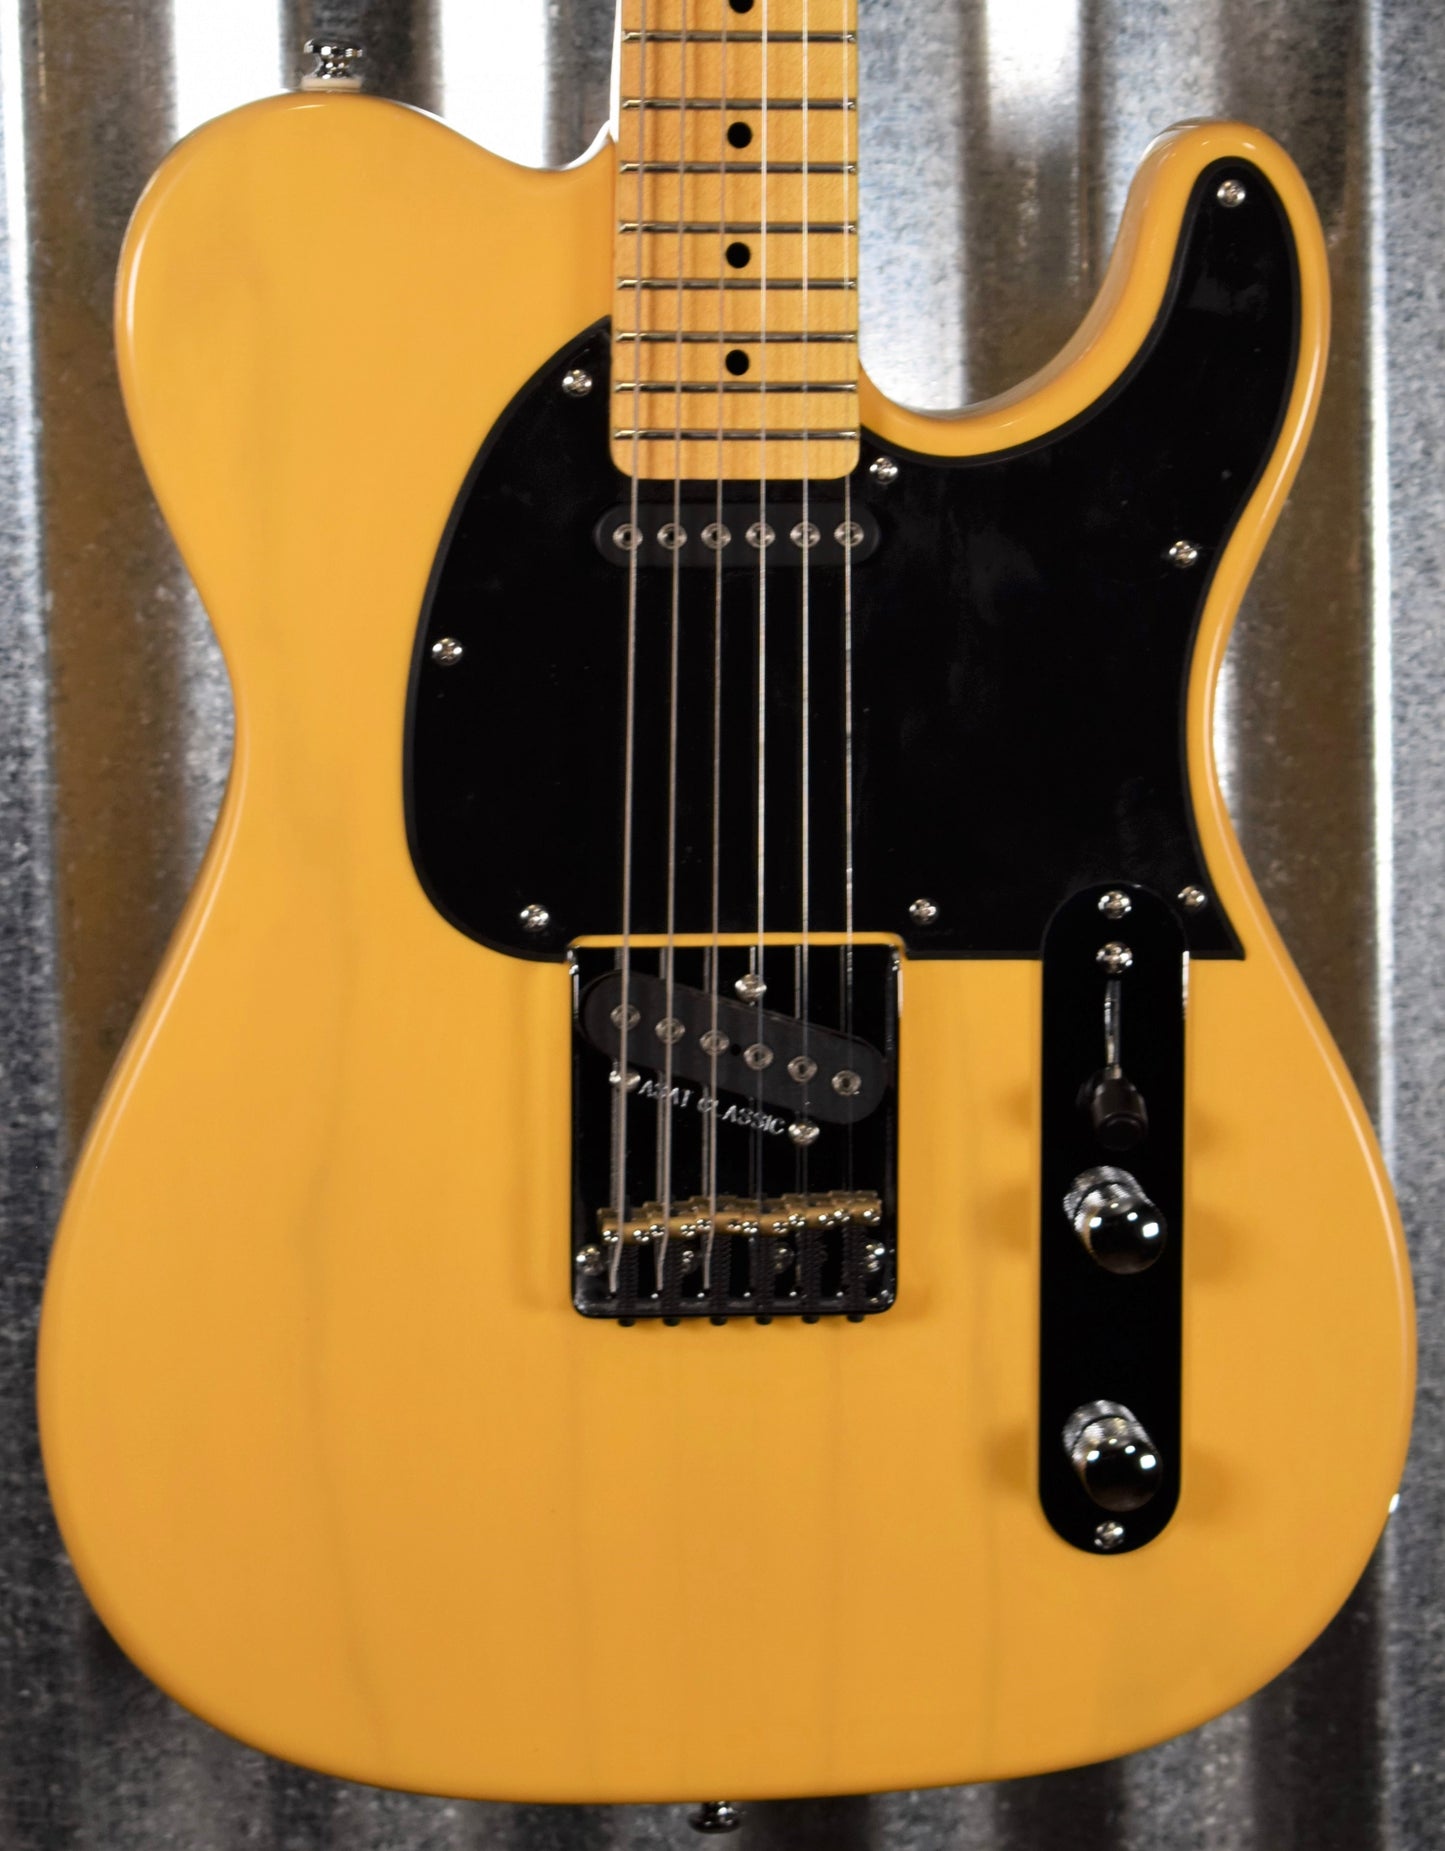 G&L Tribute ASAT Classic Butterscotch Blonde Guitar #1728 Demo